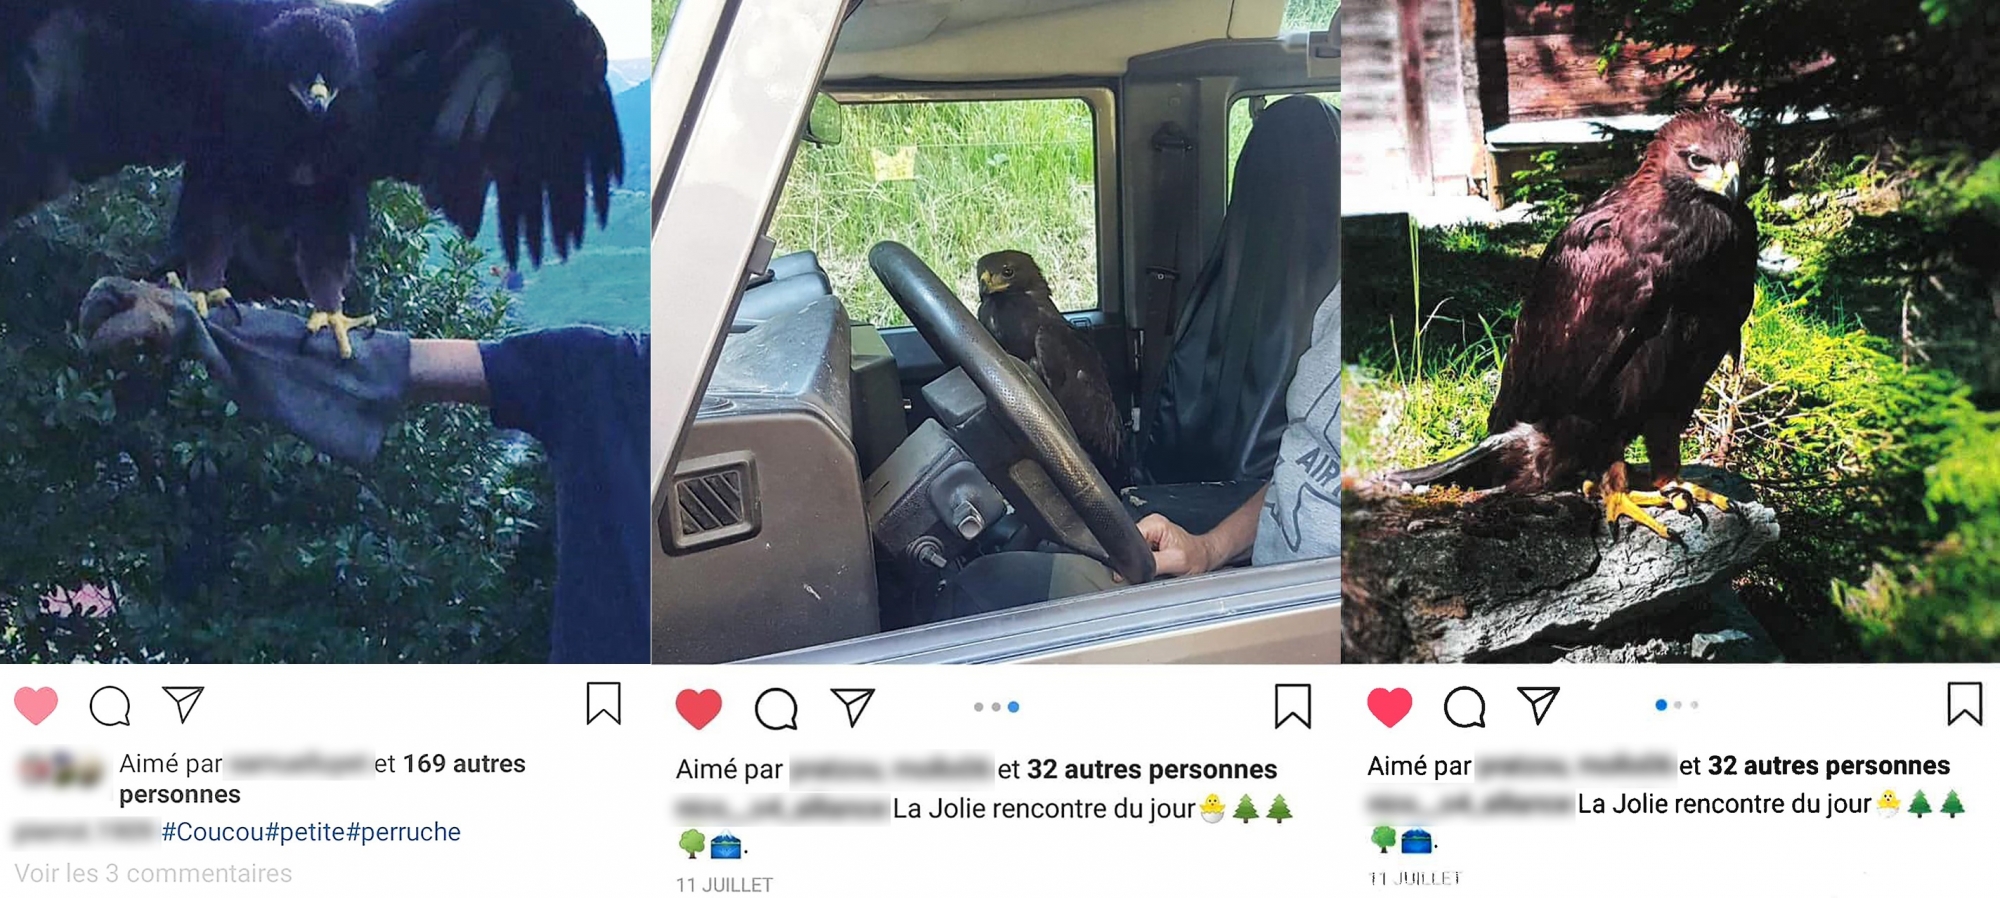 Ces photos ont été publiées sur les réseaux sociaux par des membres de l'entourage du garde-chasse, durant l'été 2018.